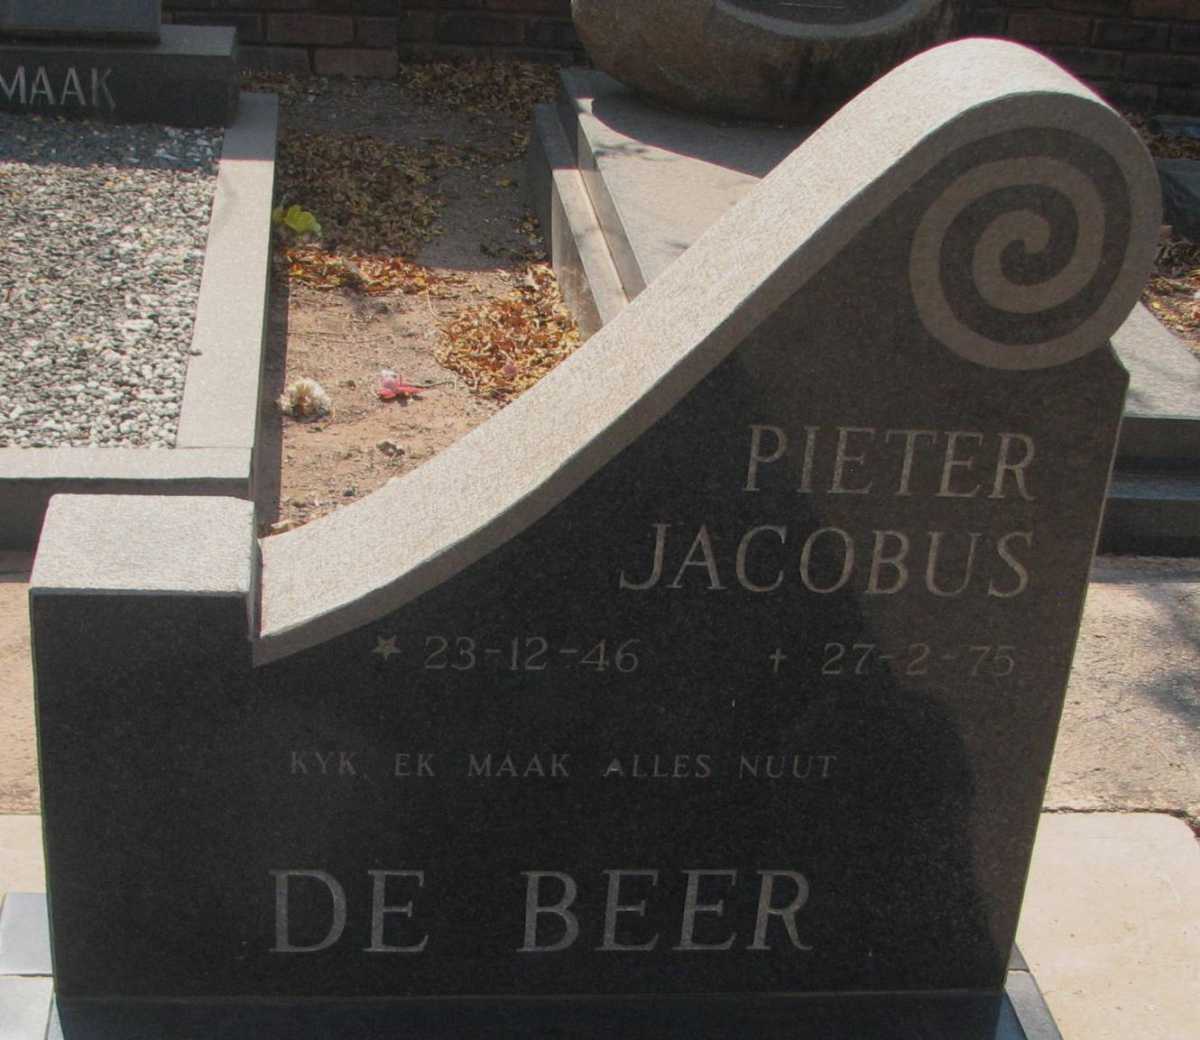 BEER Pieter Jacobus, de 1946-1975